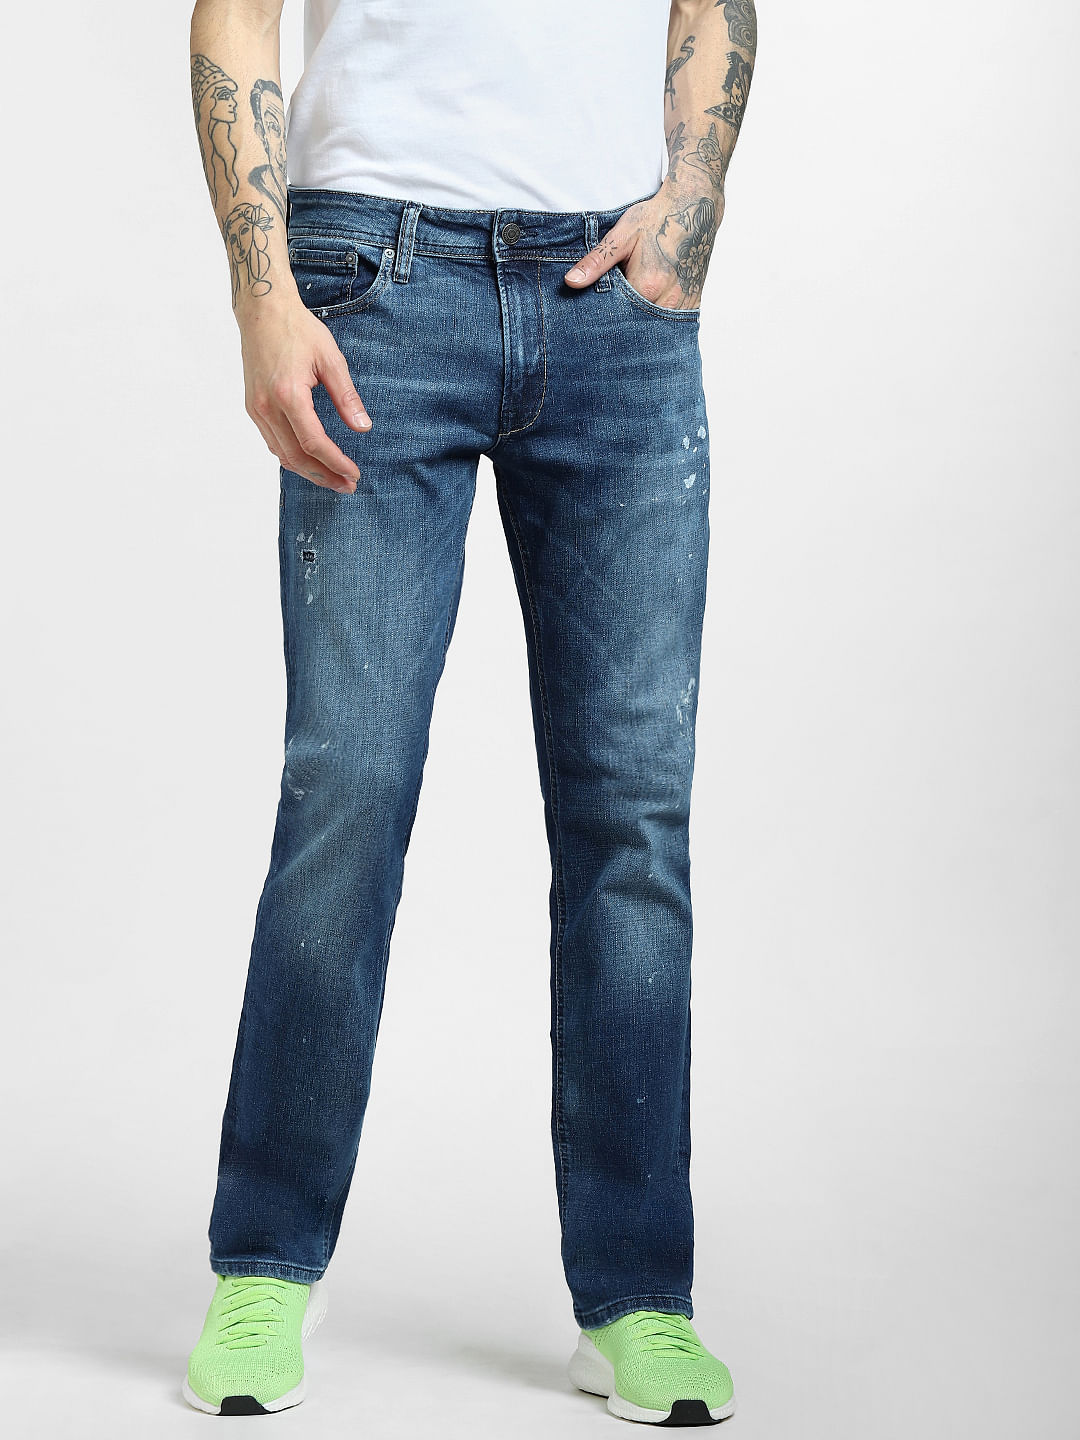 Regular Fit Jeans For Men - Buy Men Regular Fit Jeans Online in India